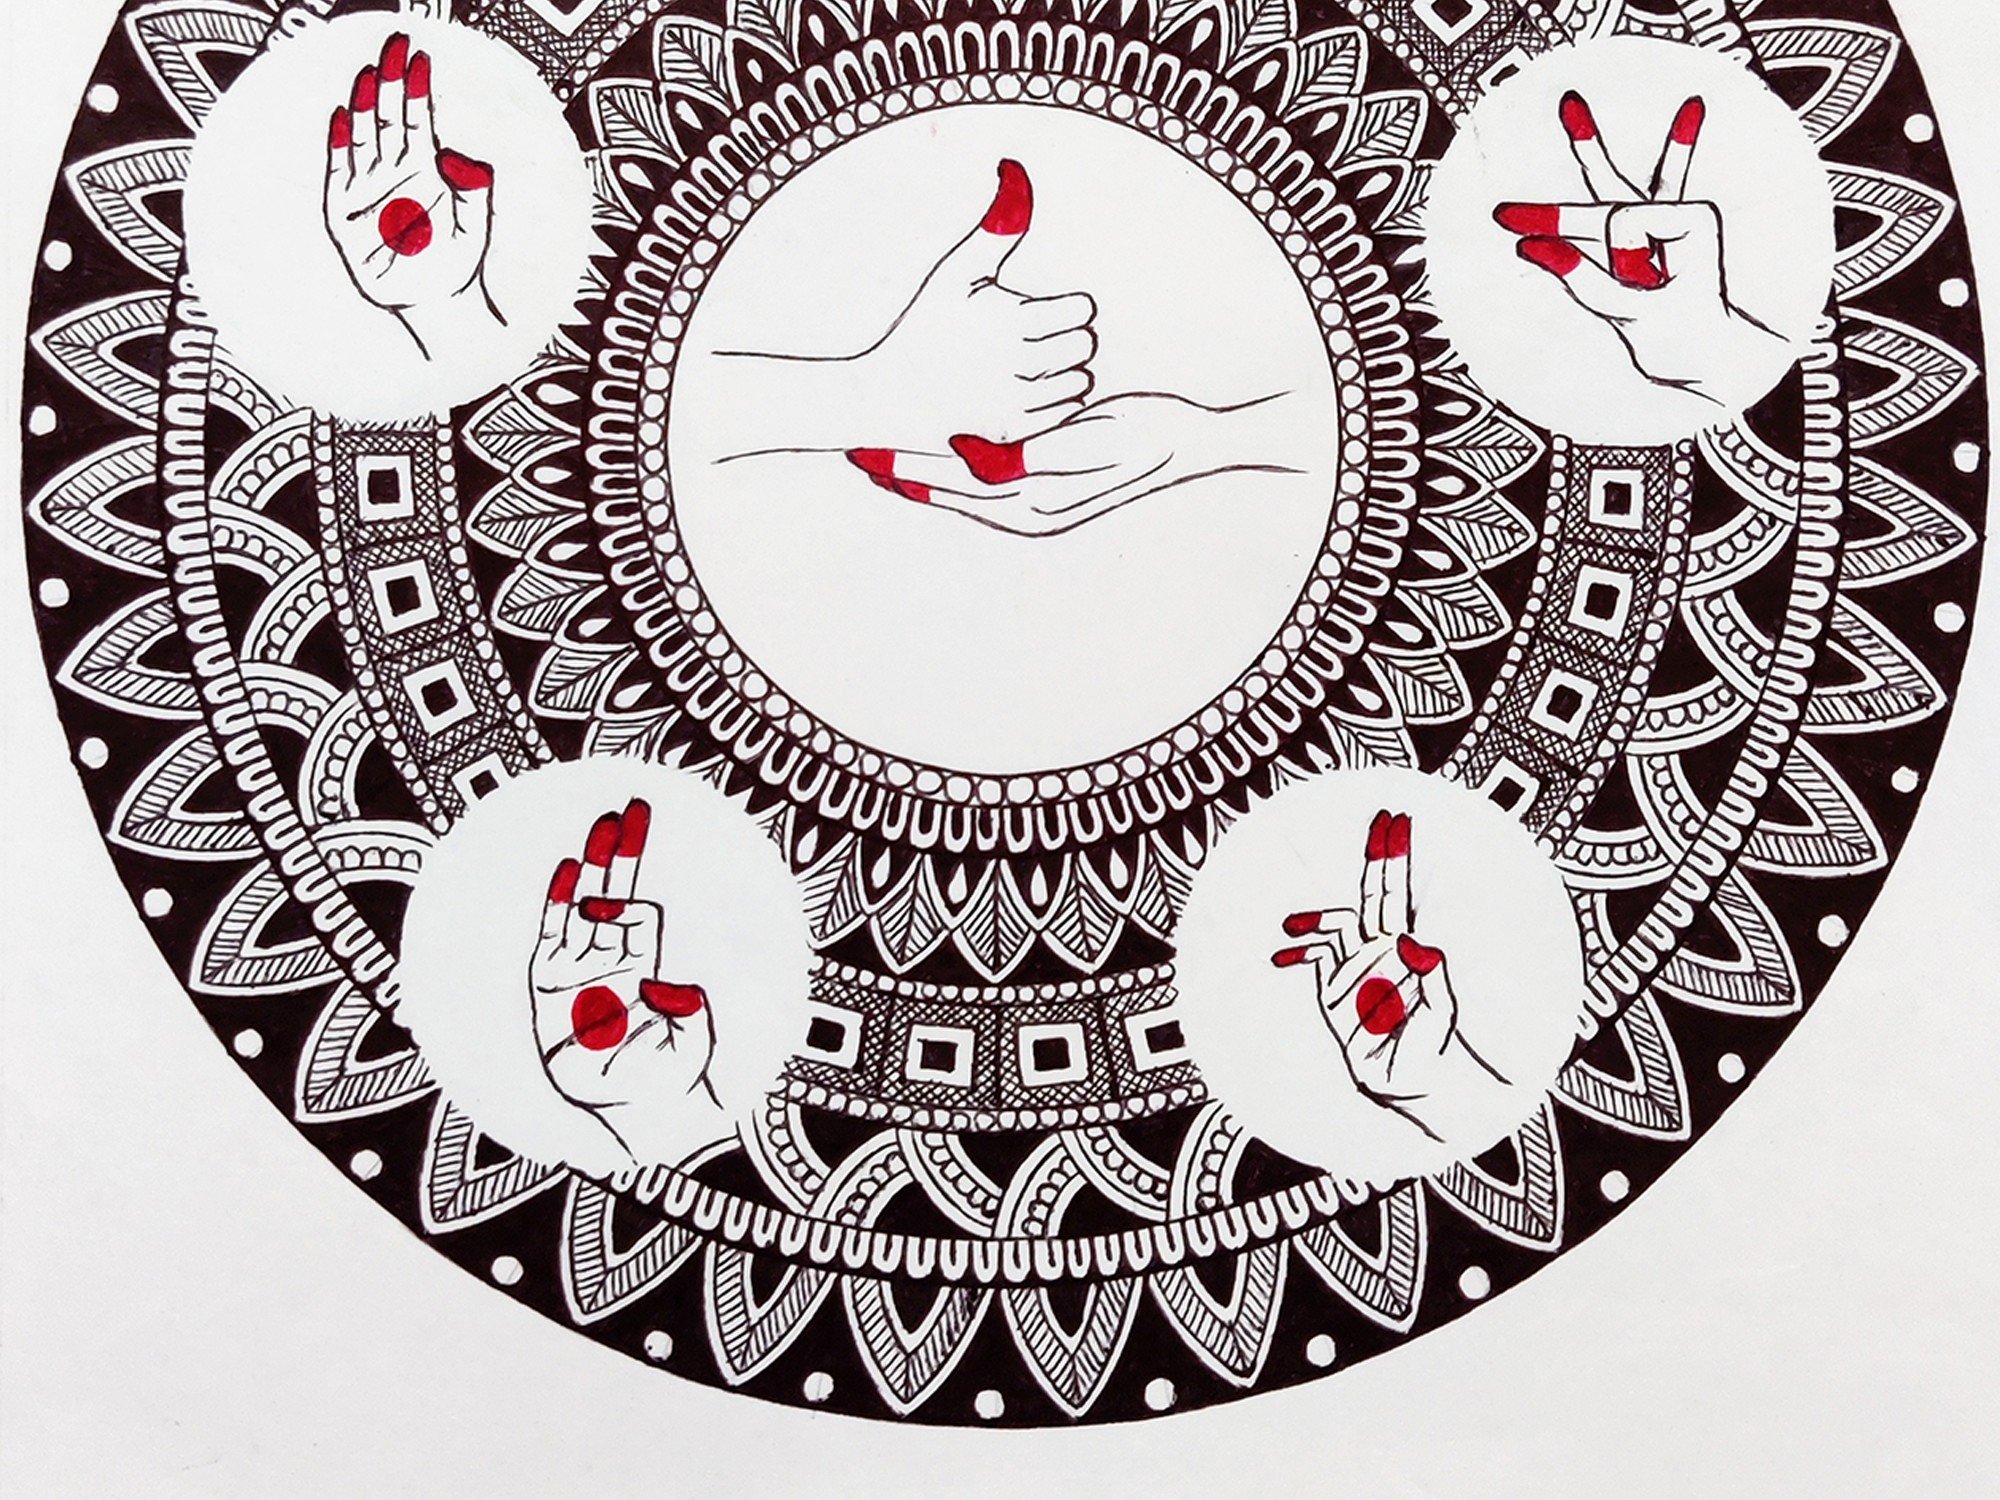 1,300+ Mudra Stock Illustrations, Royalty-Free Vector Graphics & Clip Art -  iStock | Maha mudra, Meditation mudra, Indian mudra